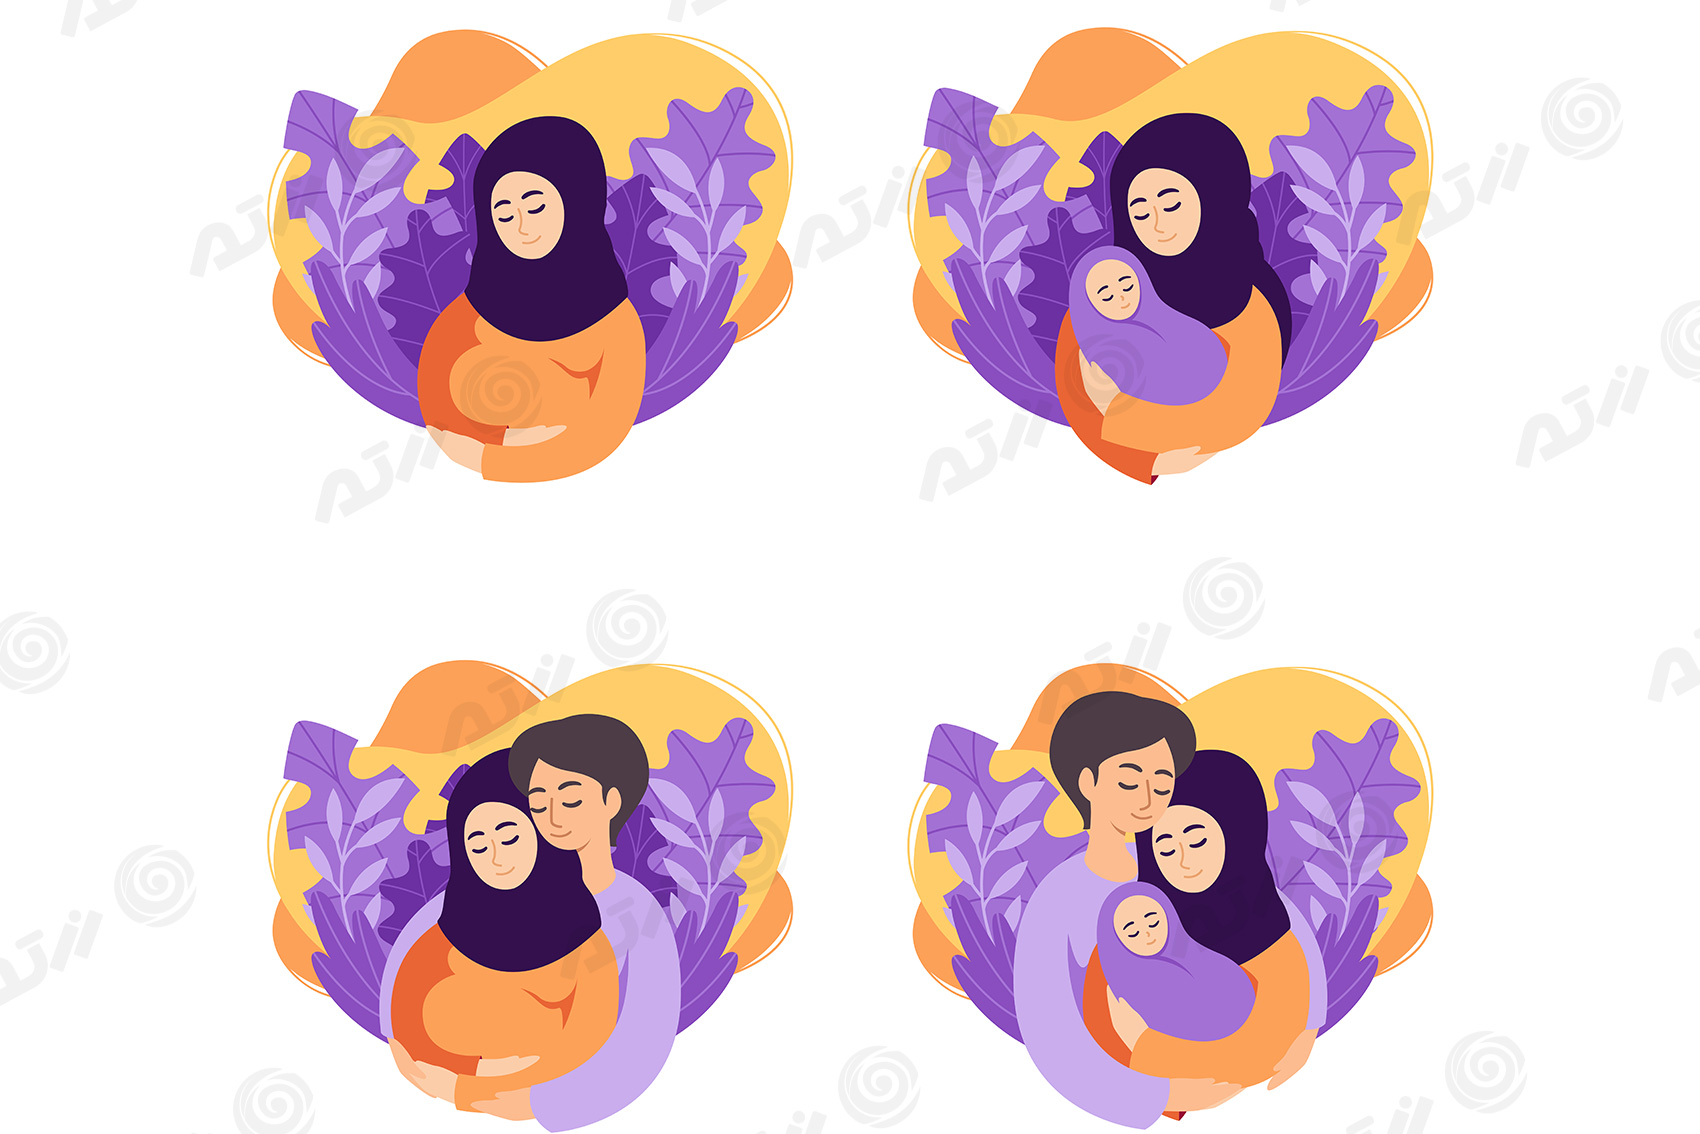 وکتور مادر باردار با حجاب اسلامی به همراه پدر و نوزاد در صحنه های متفاوت فایل EPS ویژه روز مادر